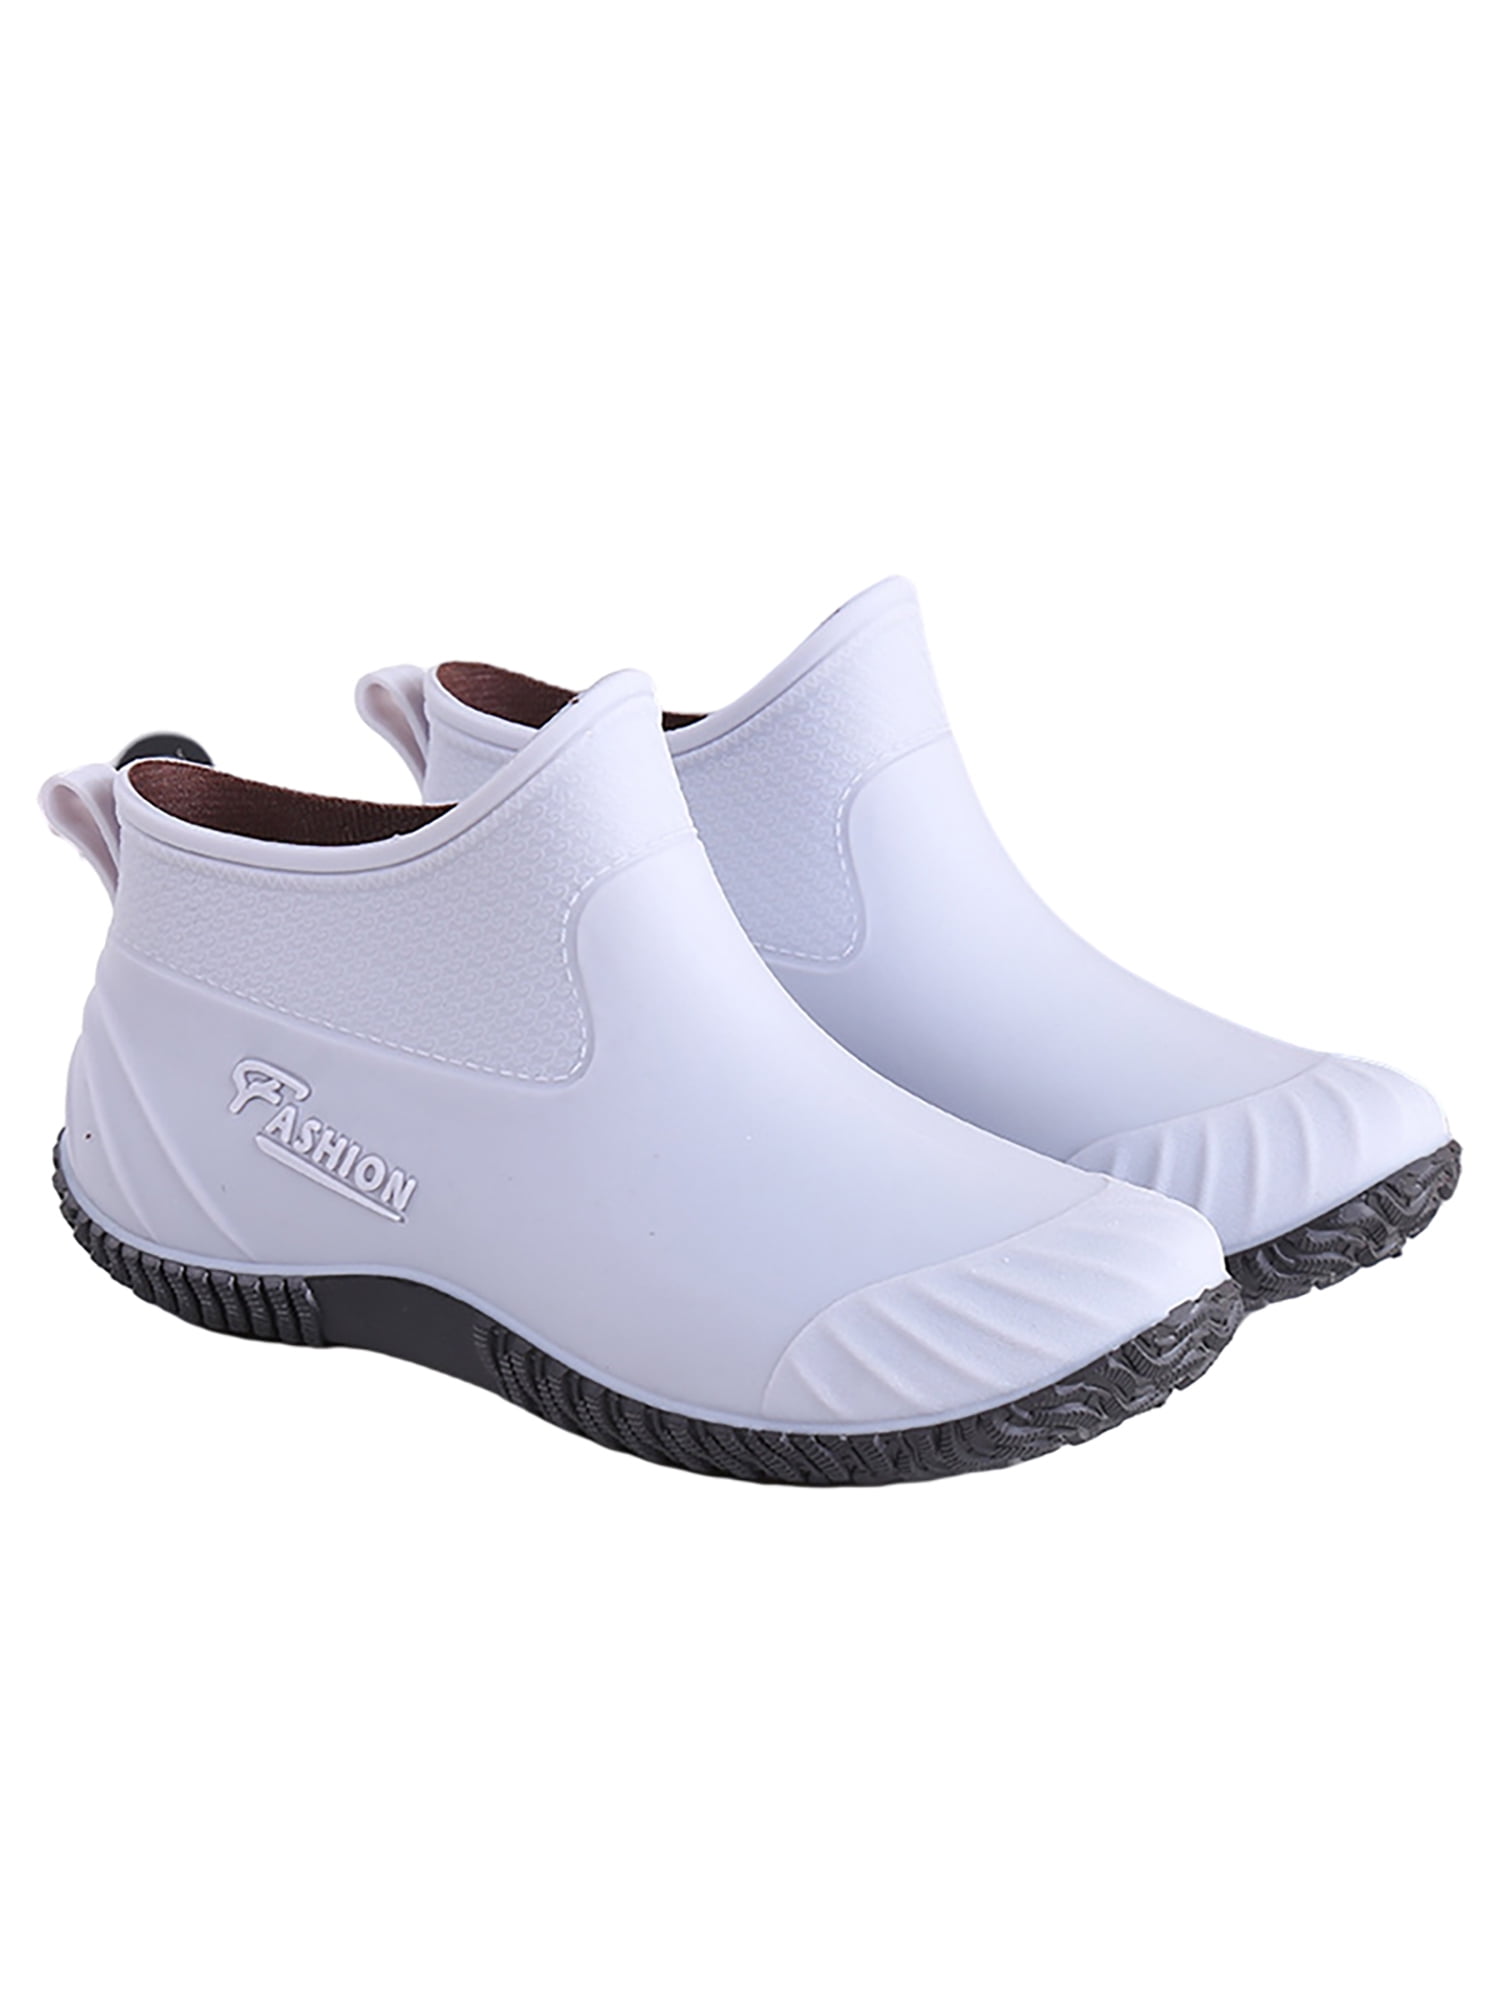 SIMANLAN Women's Ankle Rain Boots Waterproof Garden Shoes Anti-Slip ...